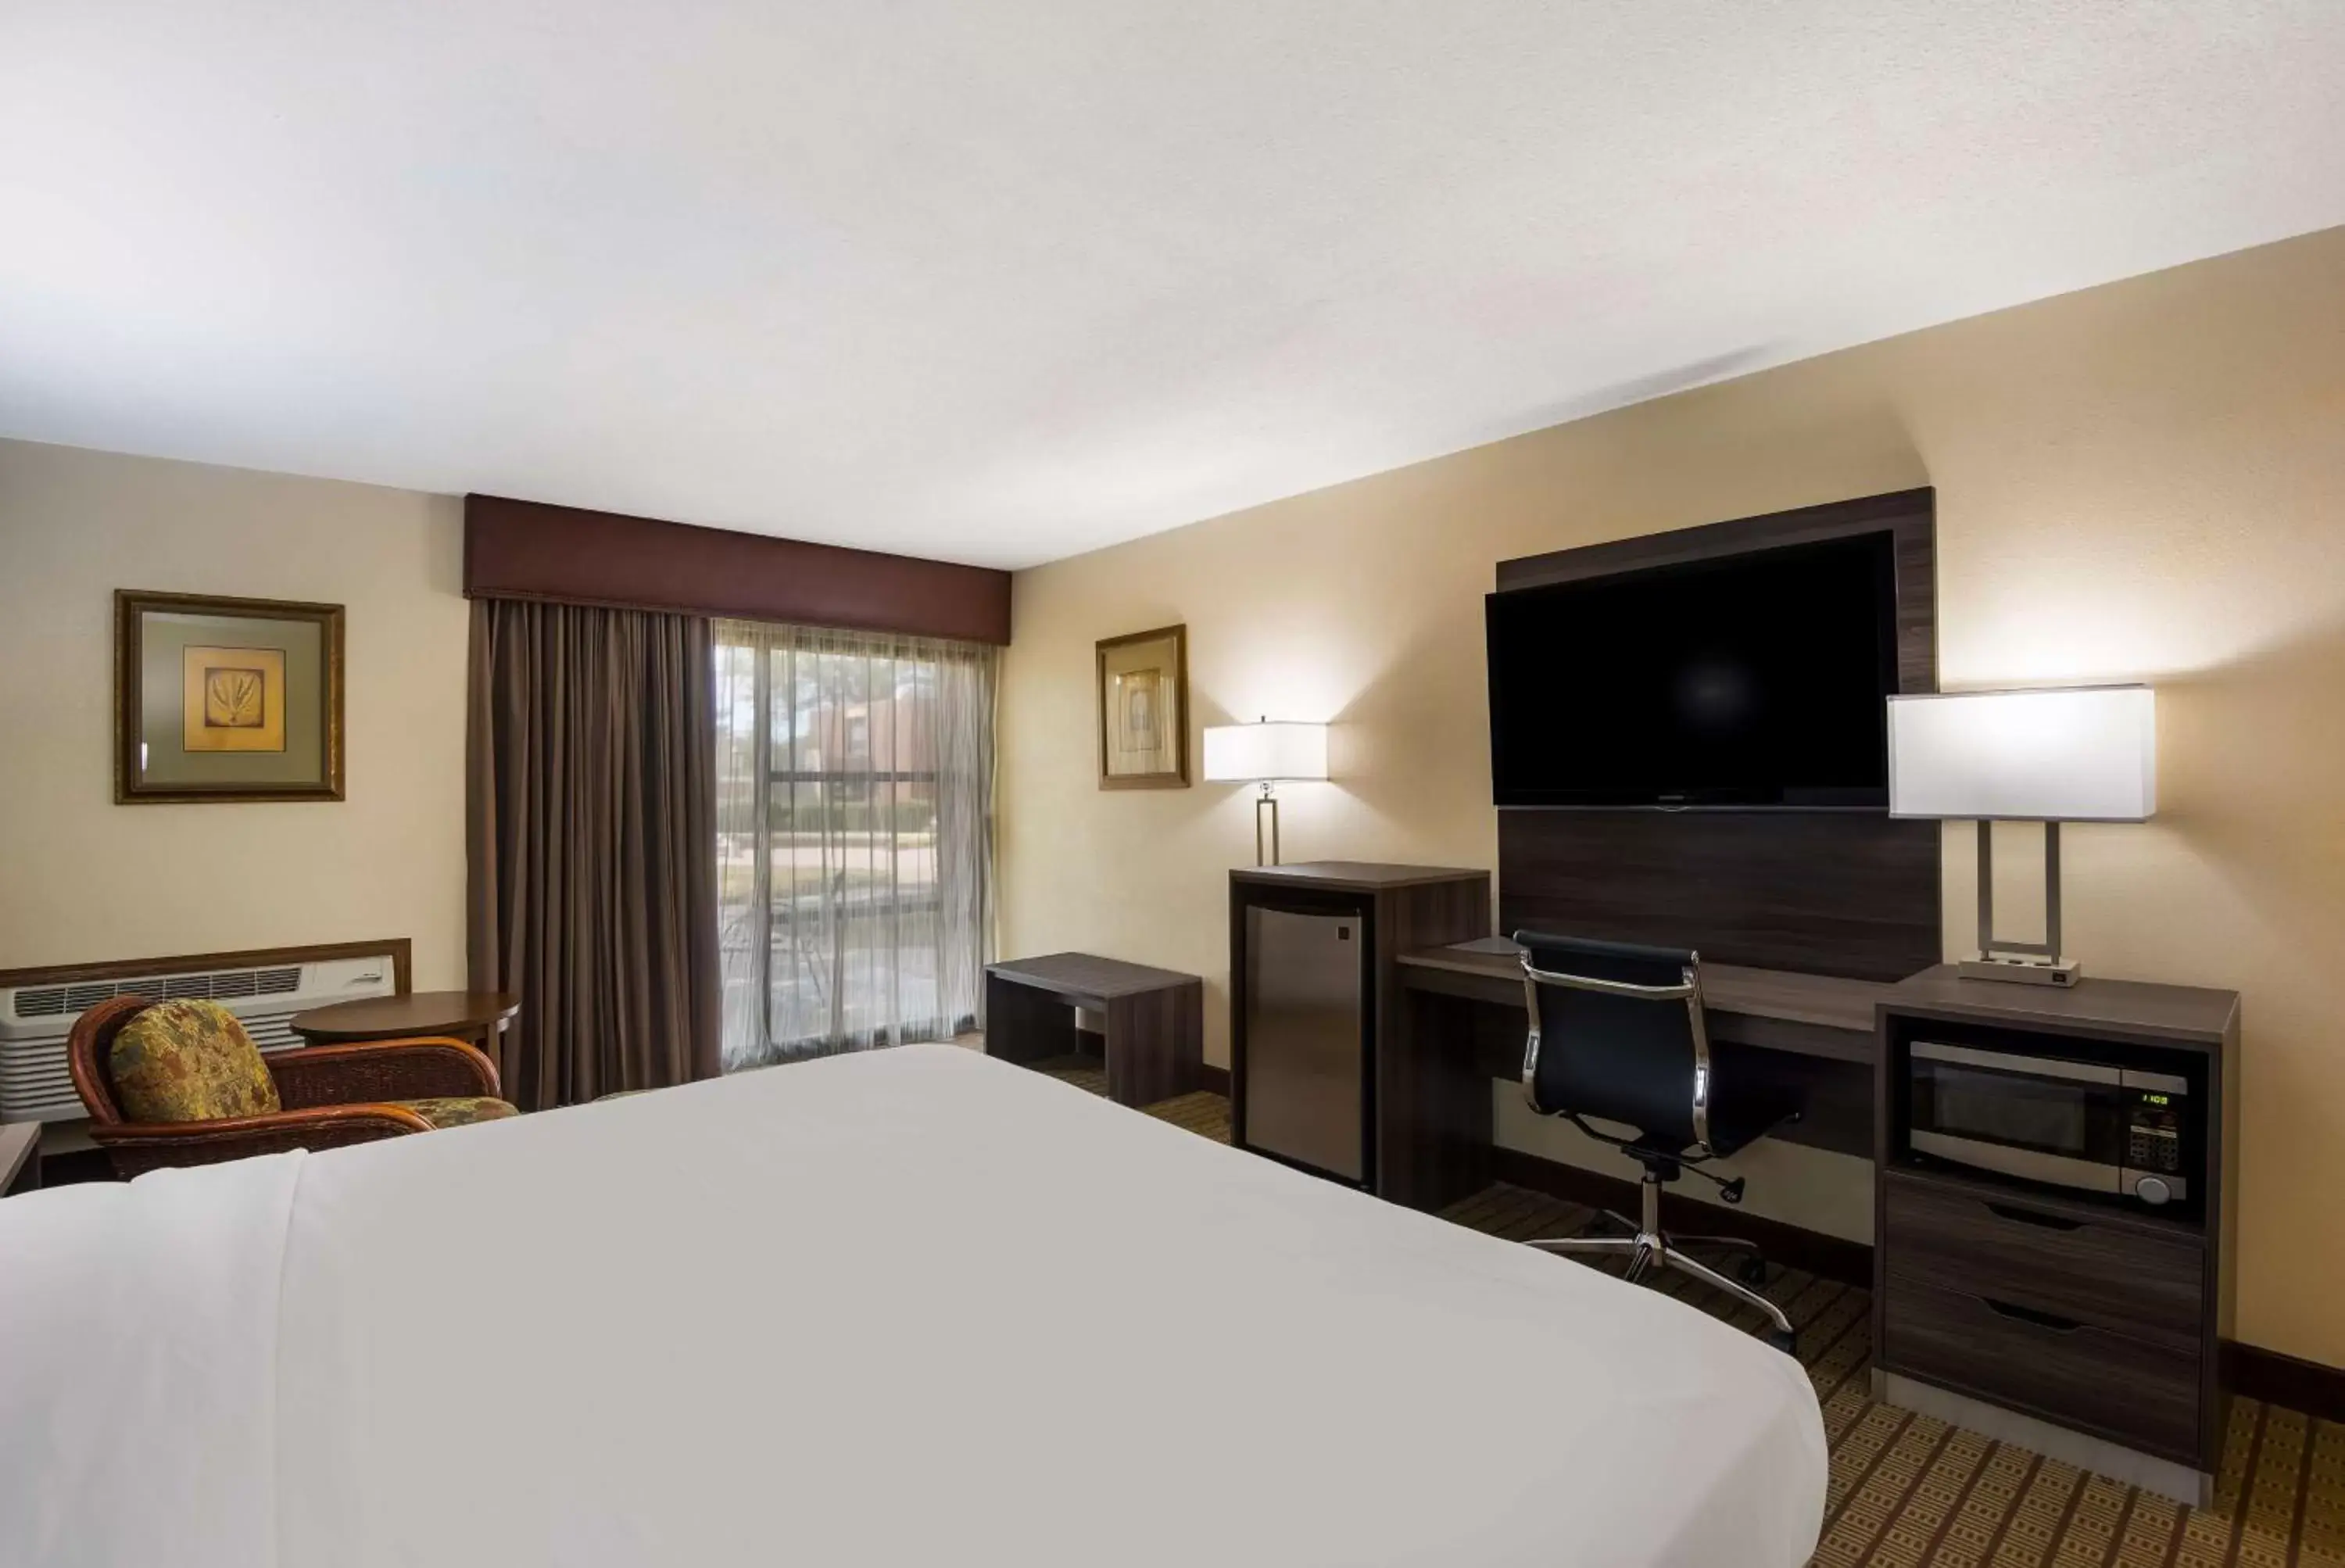 Bedroom, TV/Entertainment Center in Best Western Prairie Inn & Conference Center